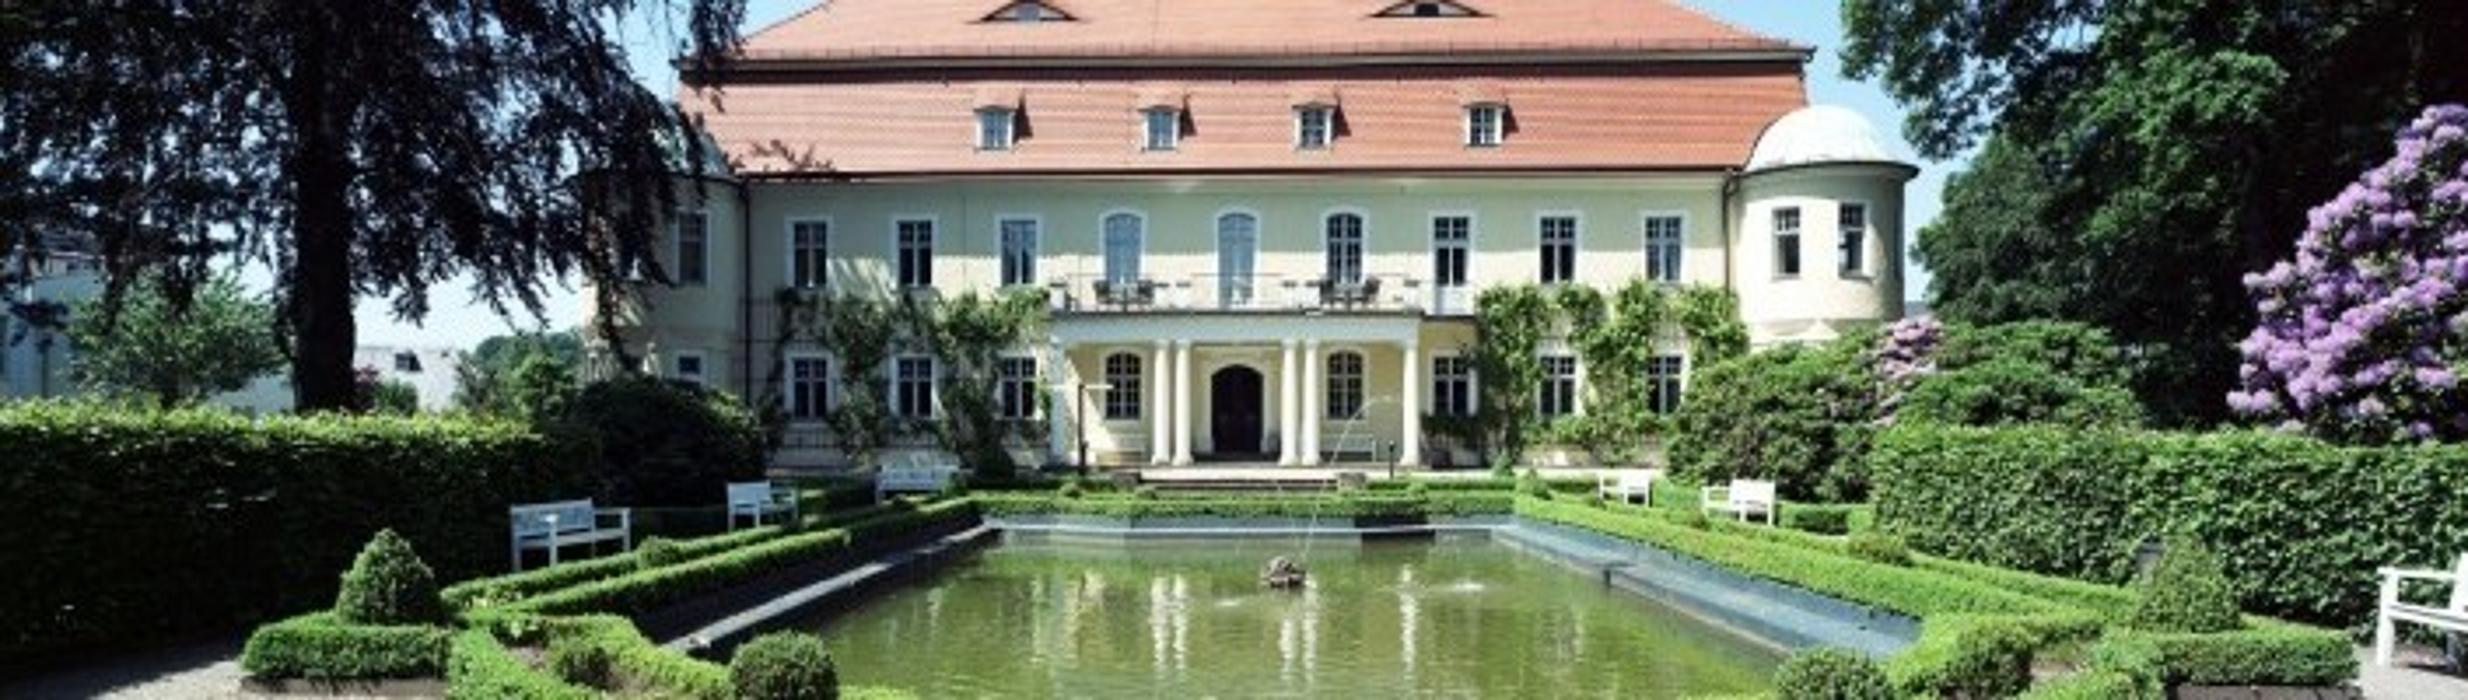 Bild 1 Hotel Schloss Schweinsburg in Neukirchen/Pleiße